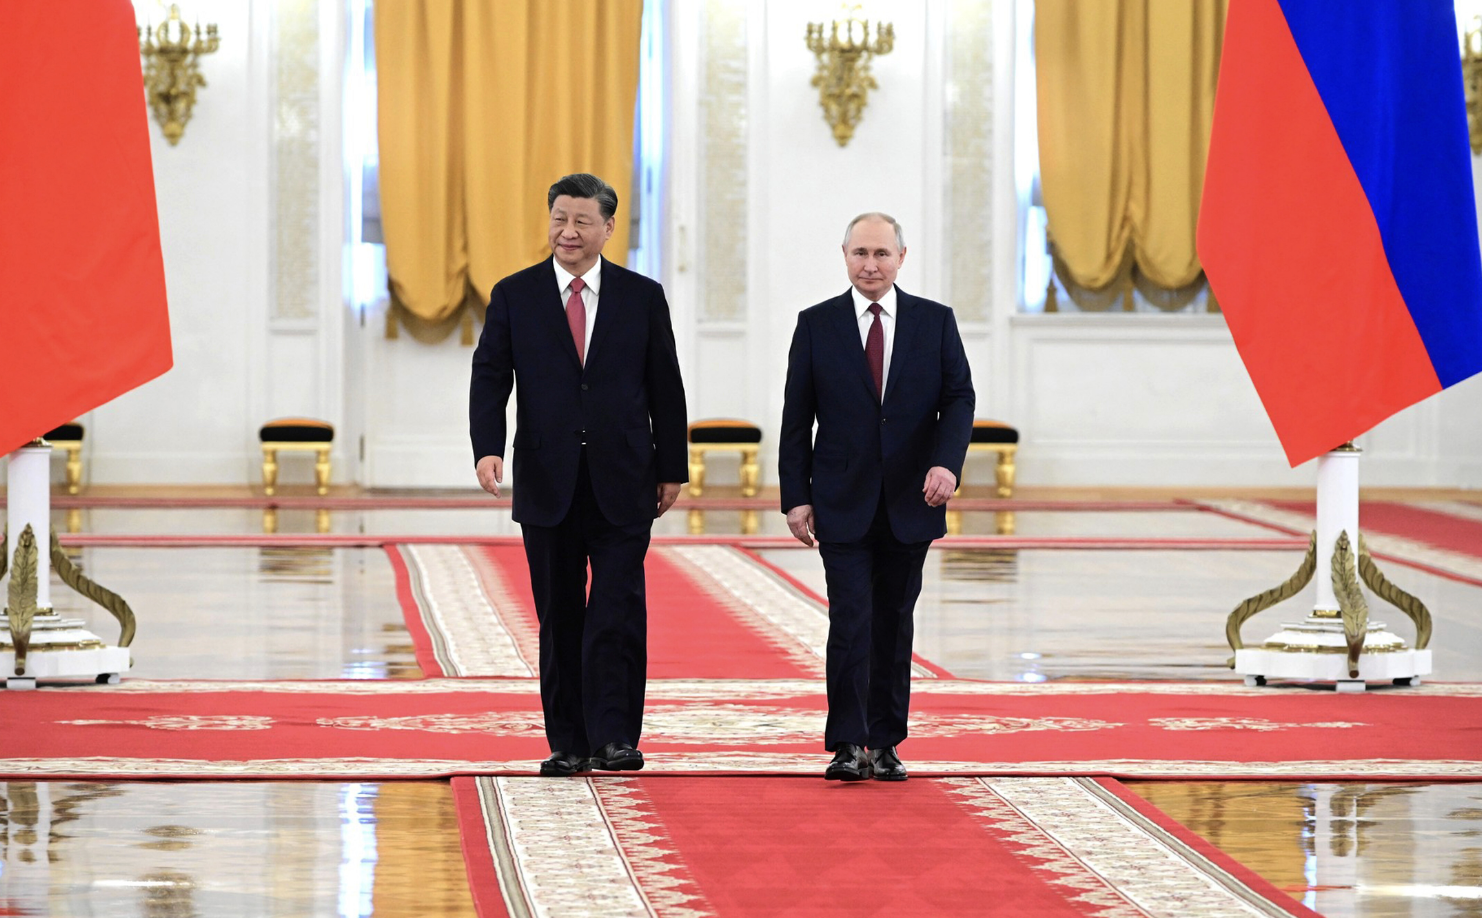 Трамп: разговор лидеров РФ и КНР о переменах — худший момент в истории США